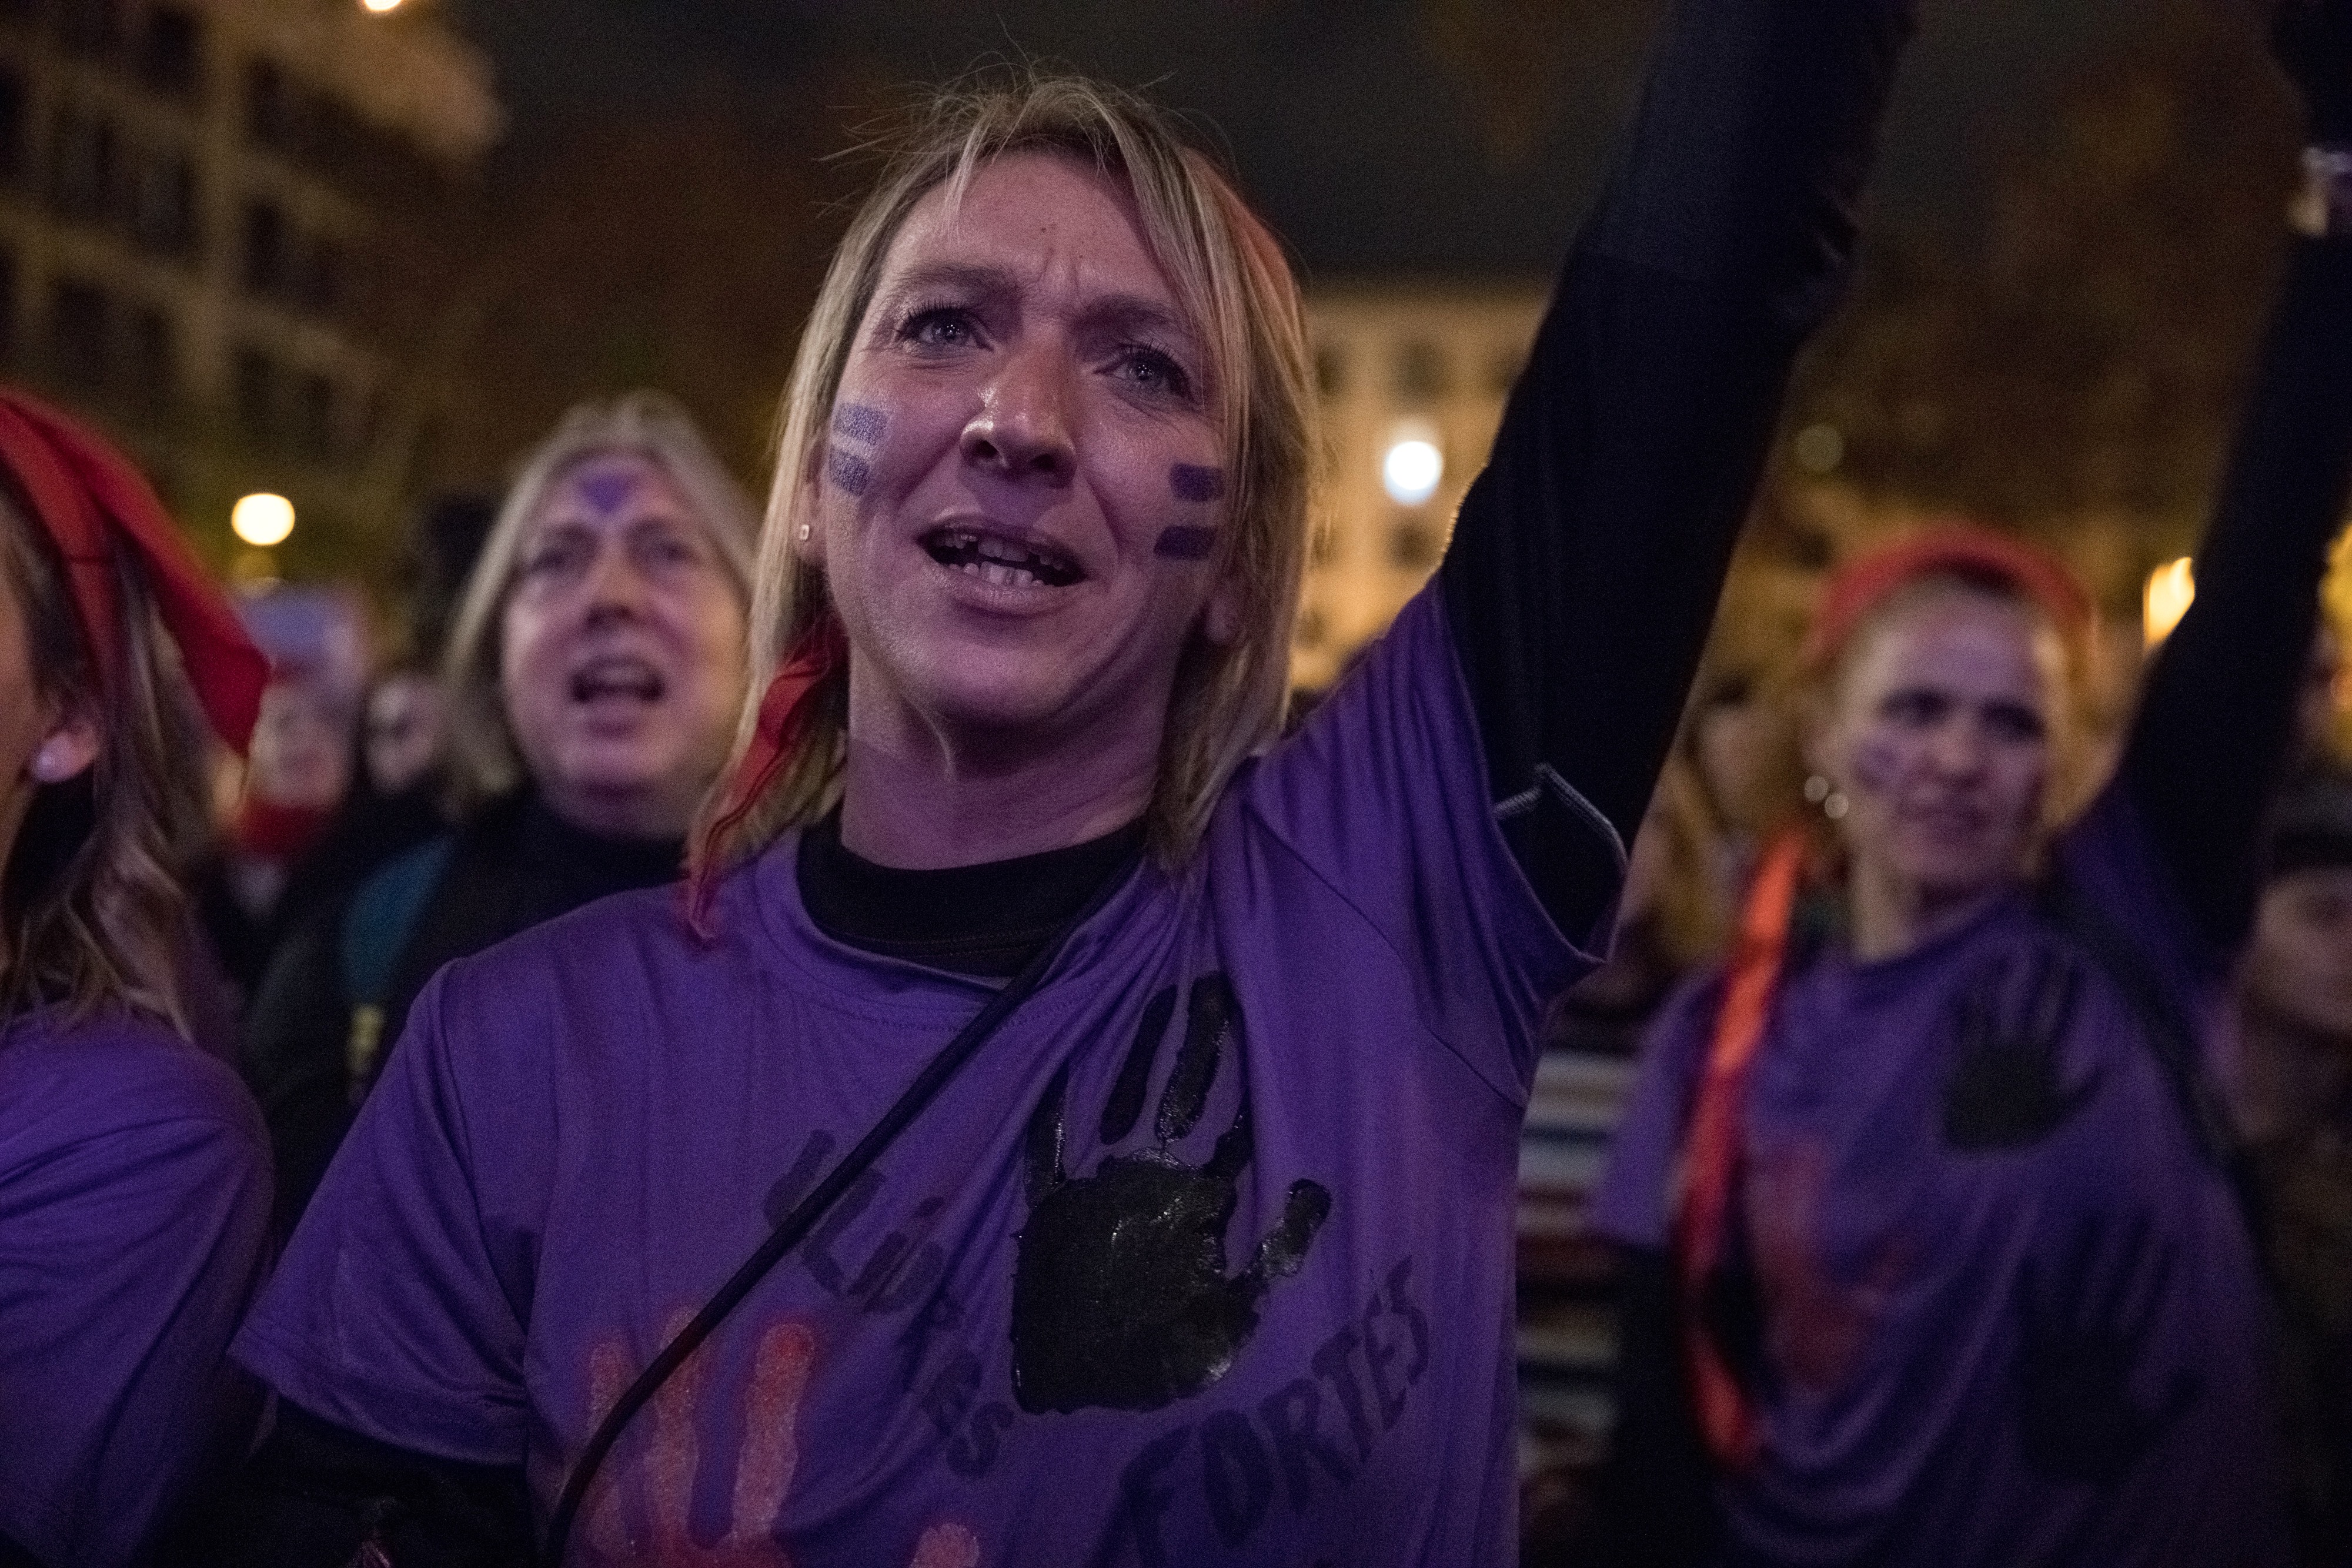 Barcelona grita "¡Se ha acabado!" a las violencias contra las mujeres en la manifestación del 25-N